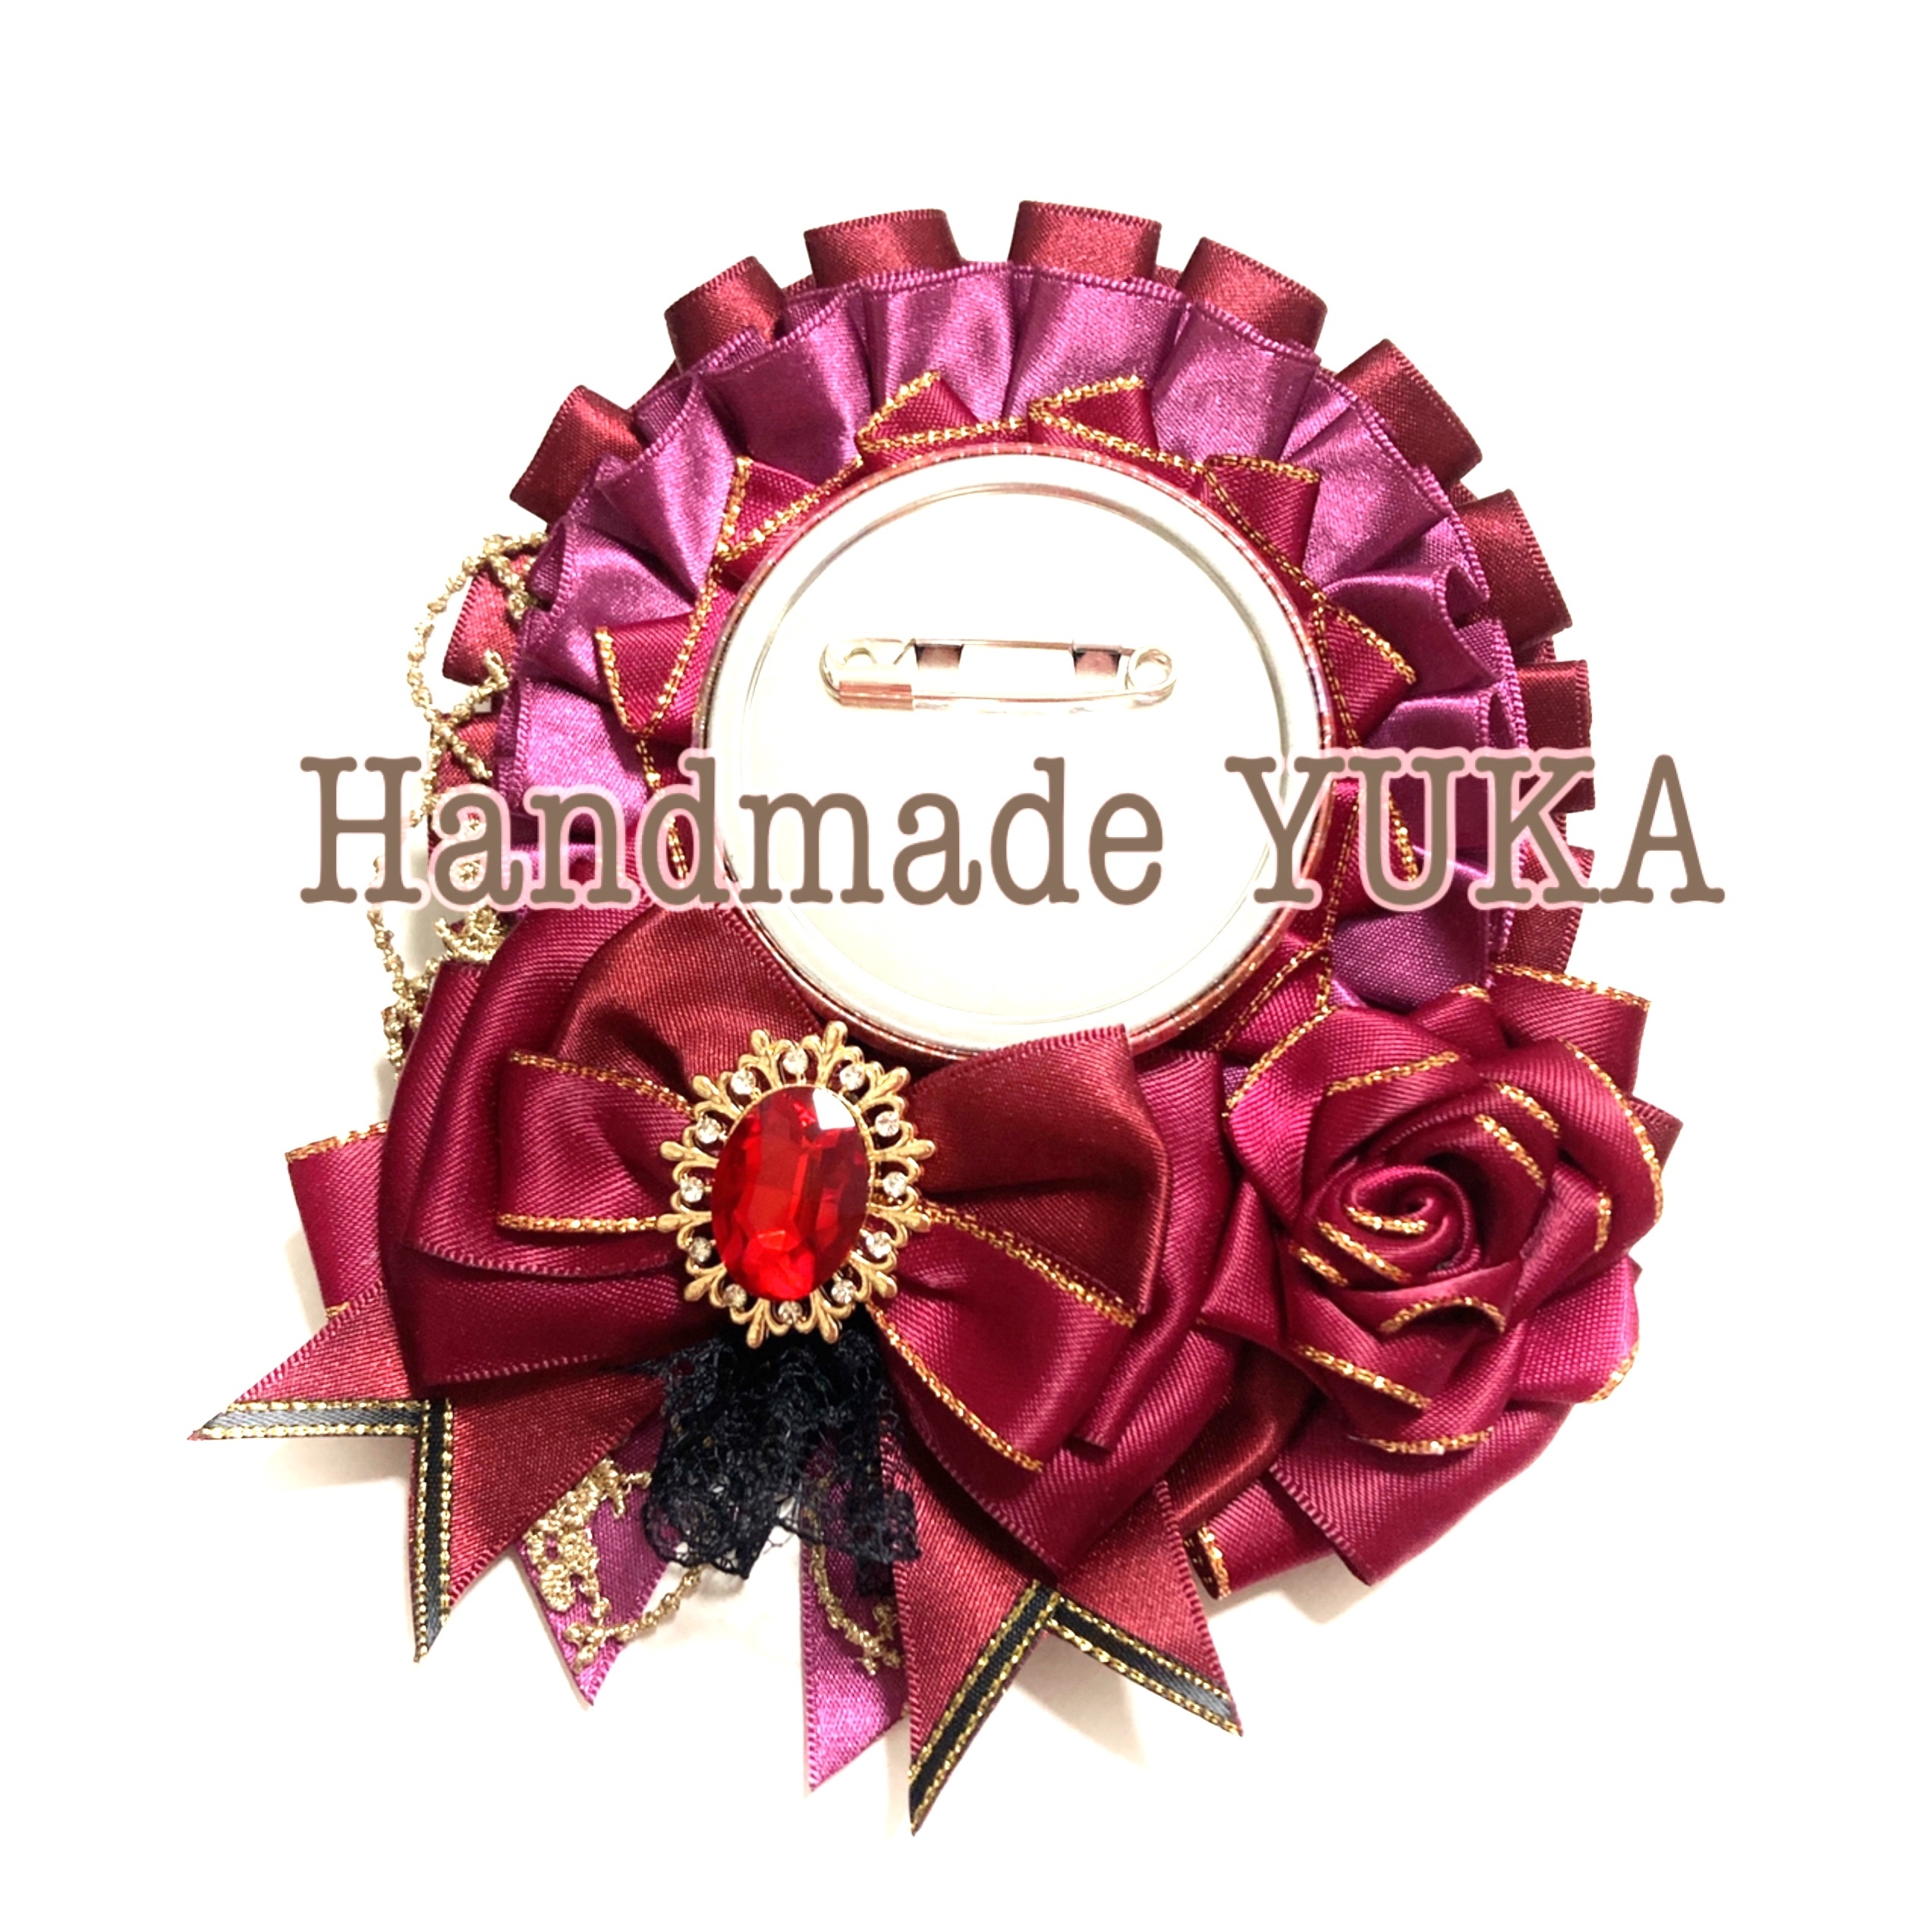 Handmade Yuka